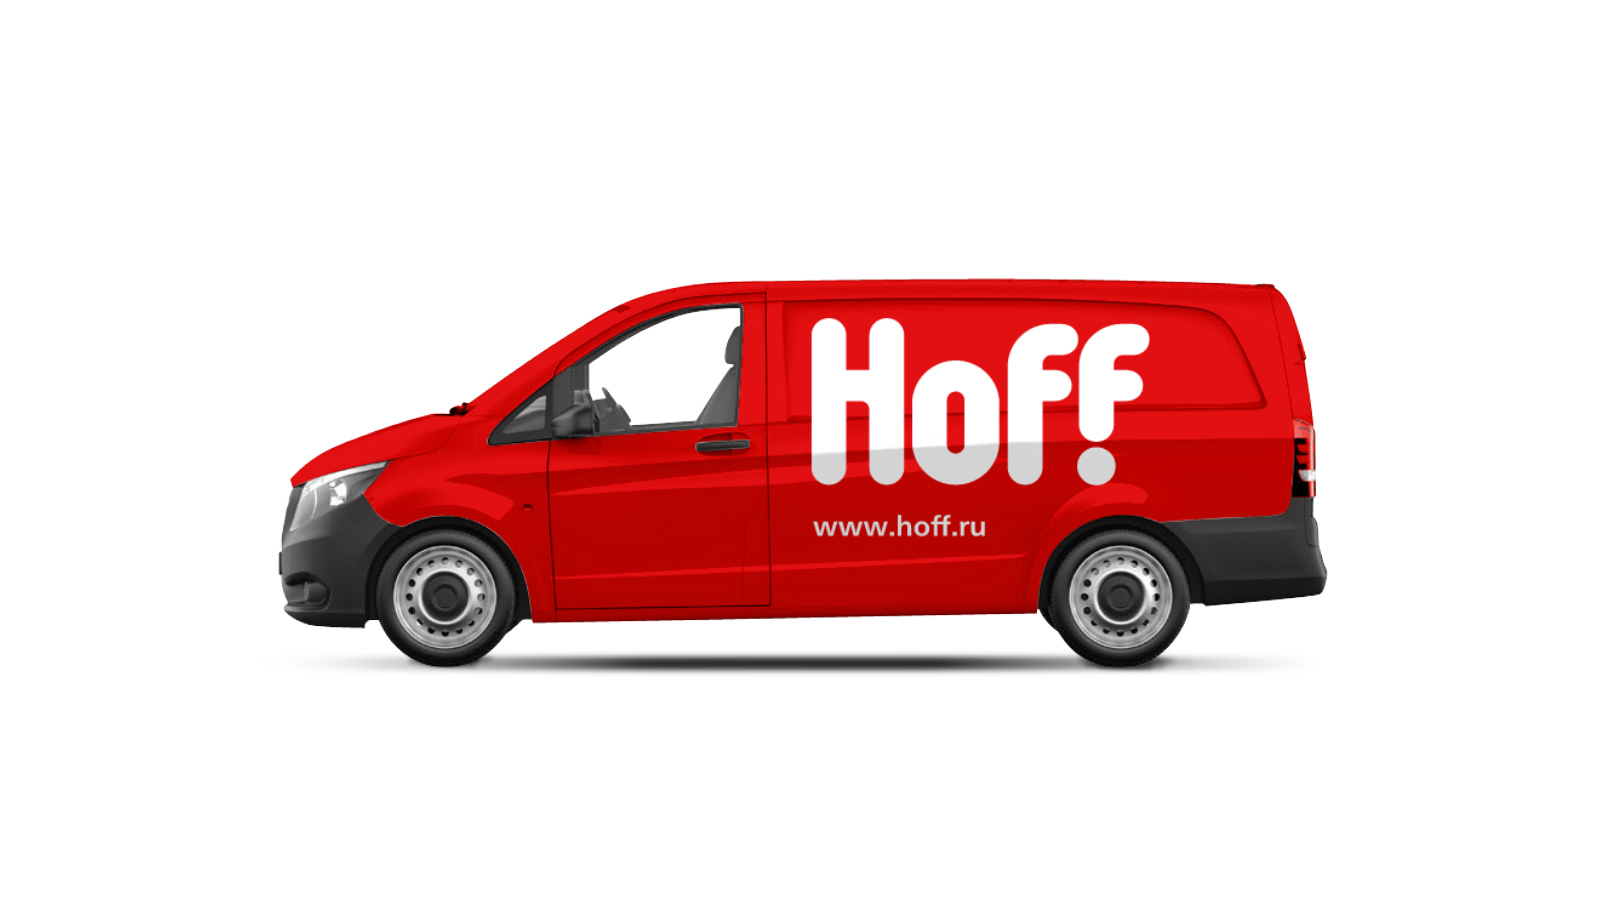 Дизайн автотранспорта Hoff